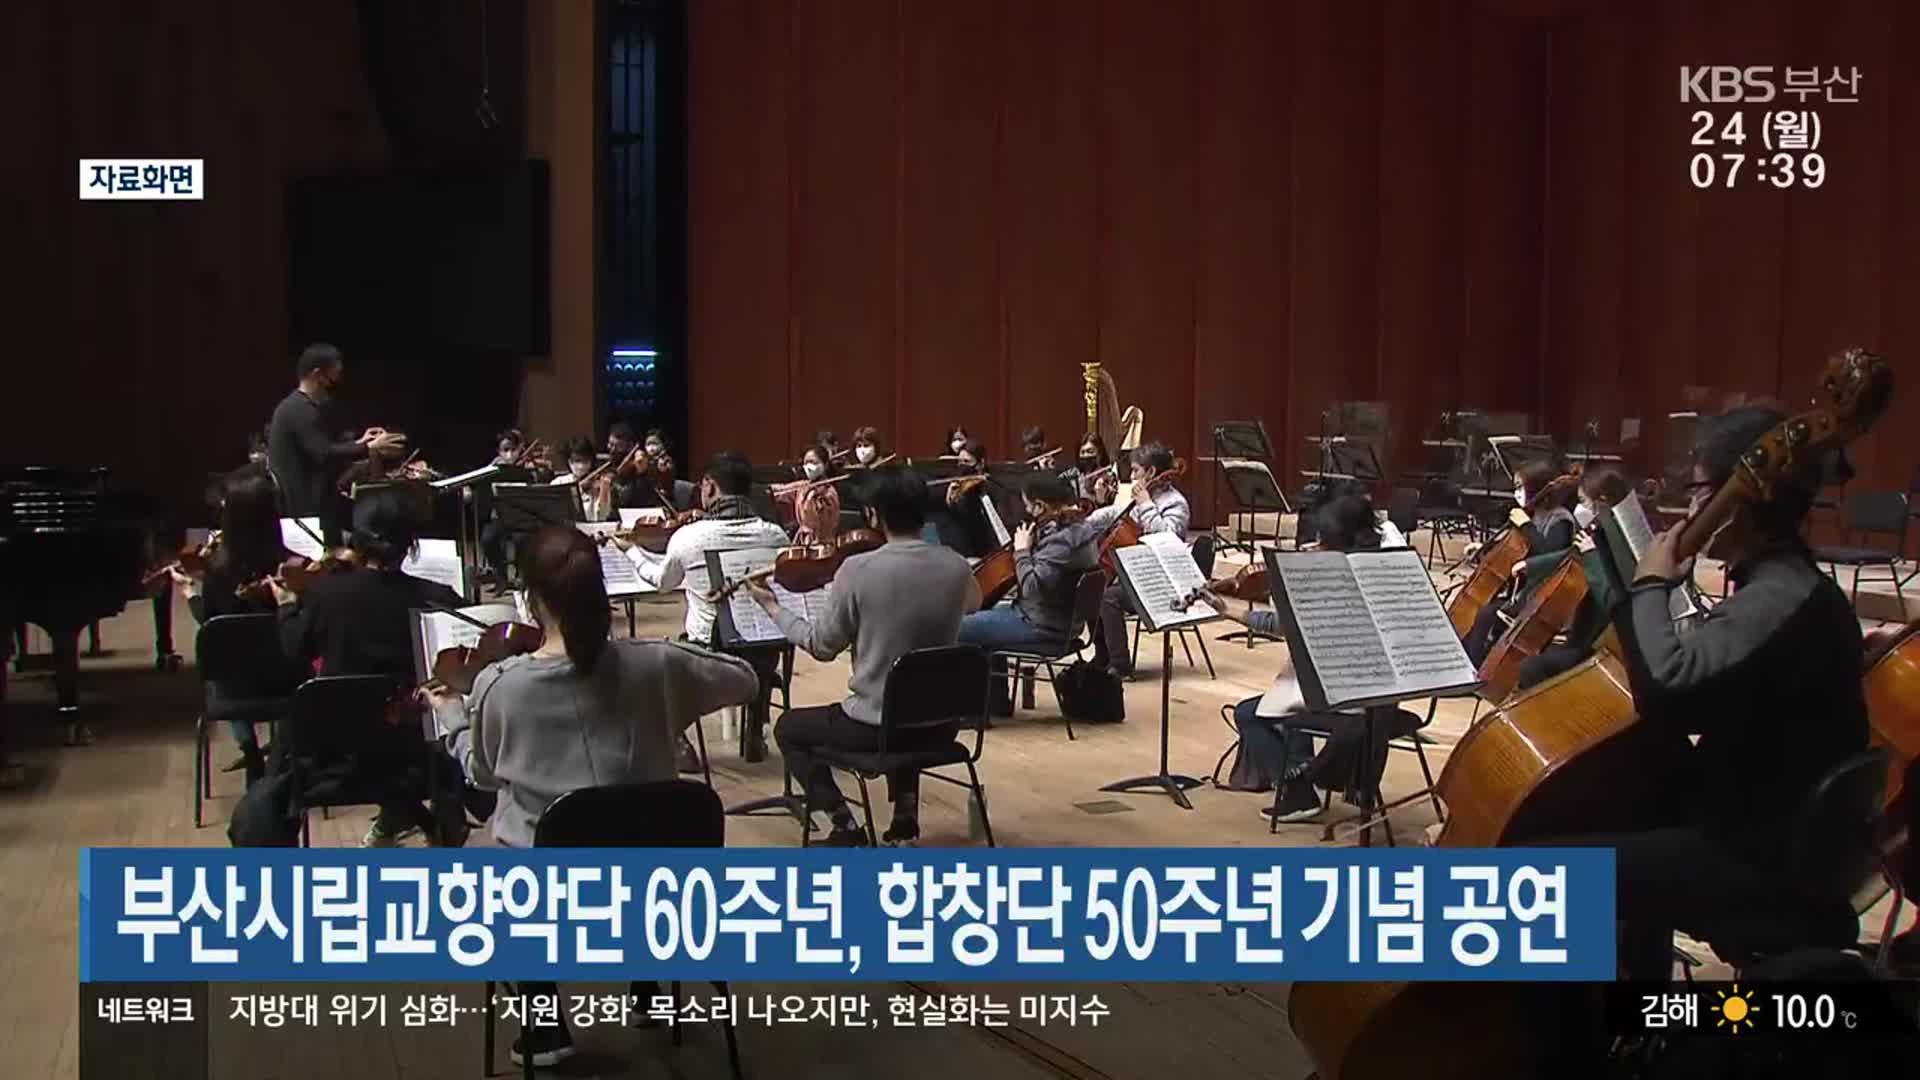 부산시립교향악단 60주년, 합창단 50주년 기념 공연